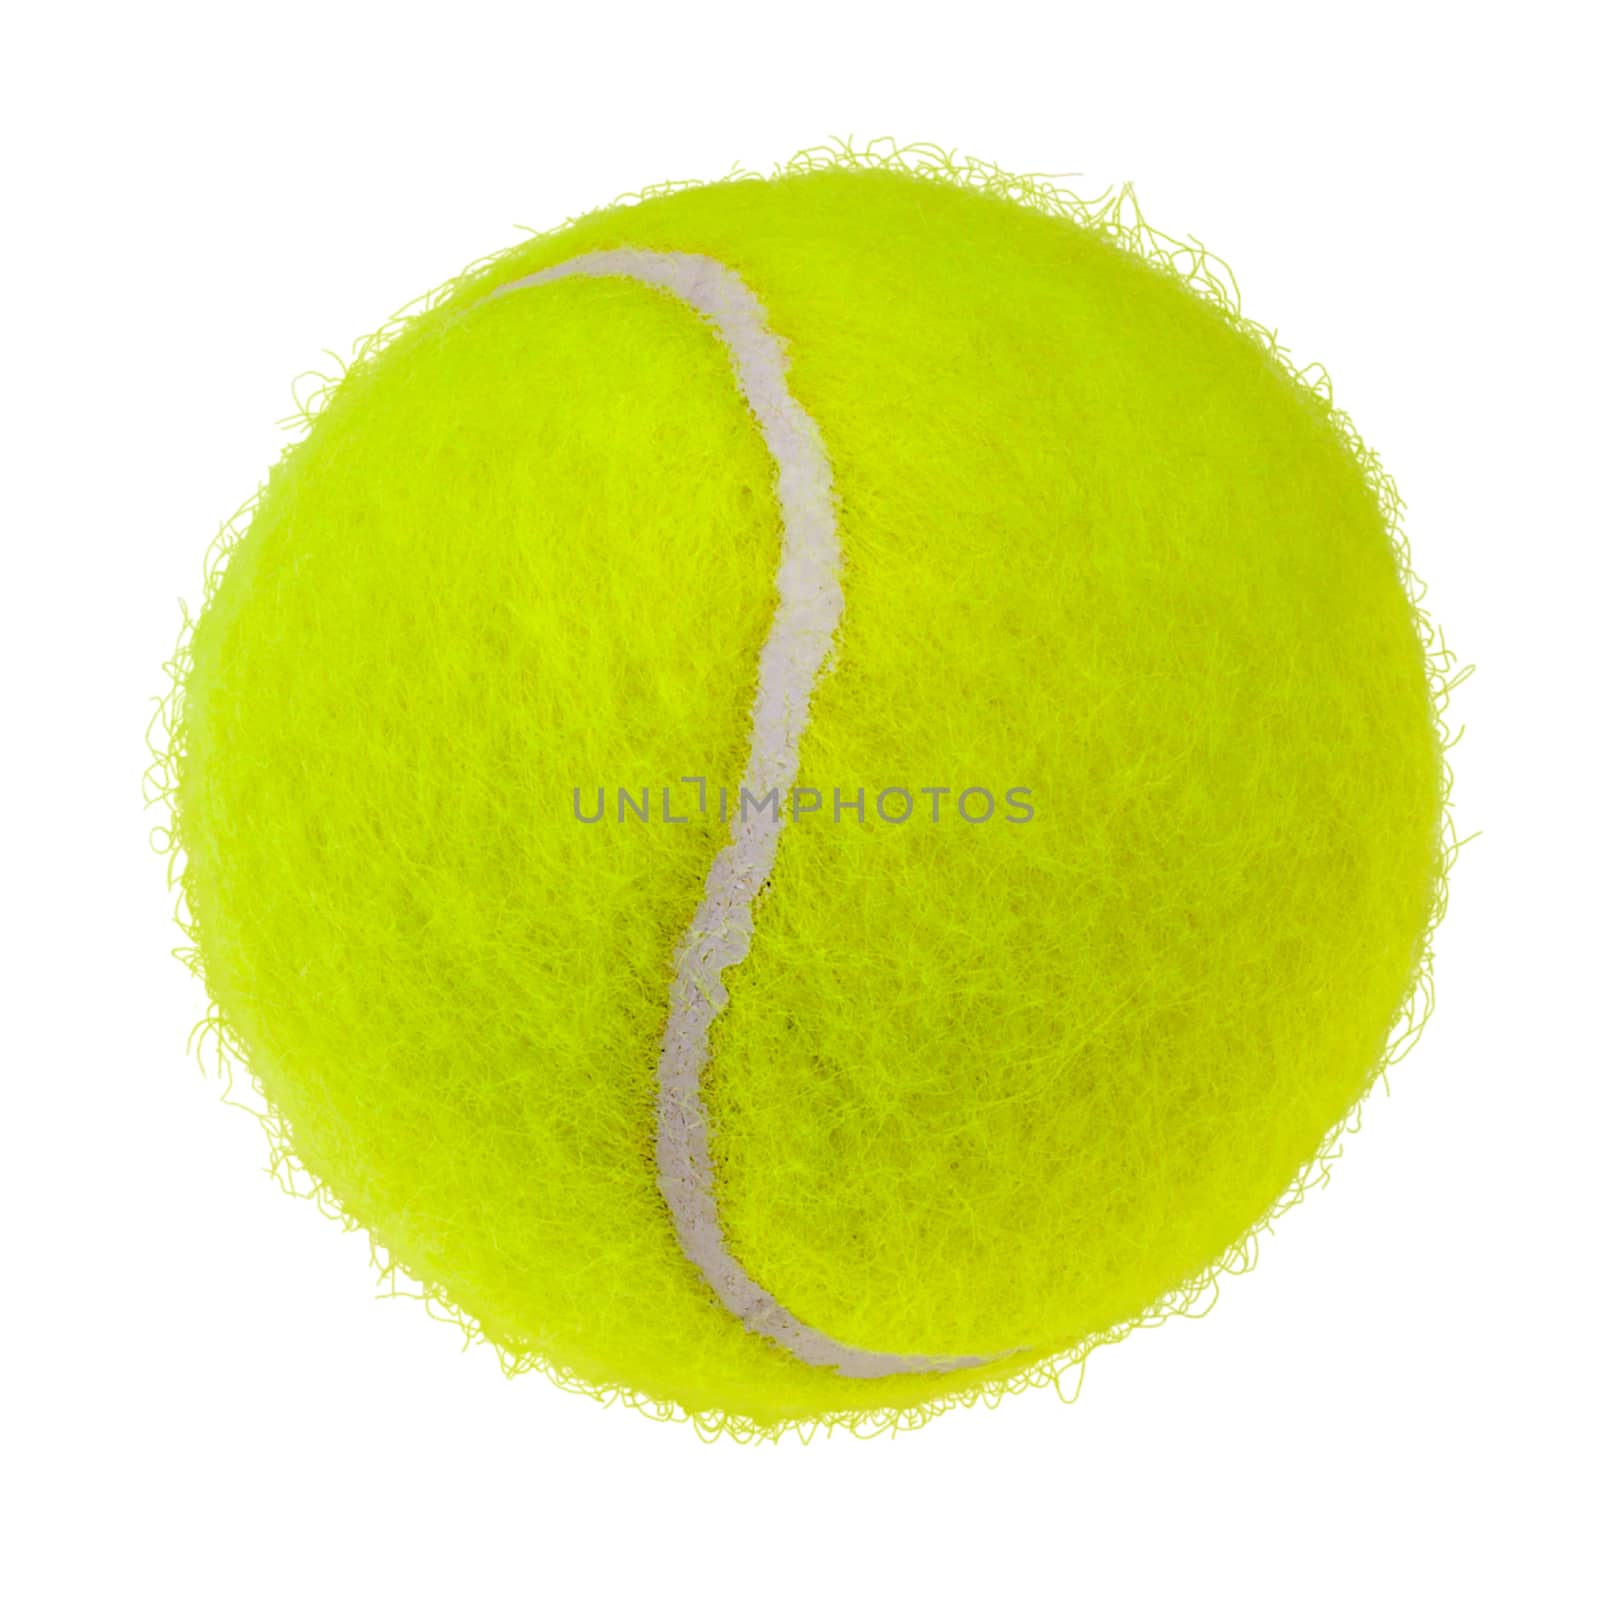 Tennis ball cutout by vkstudio